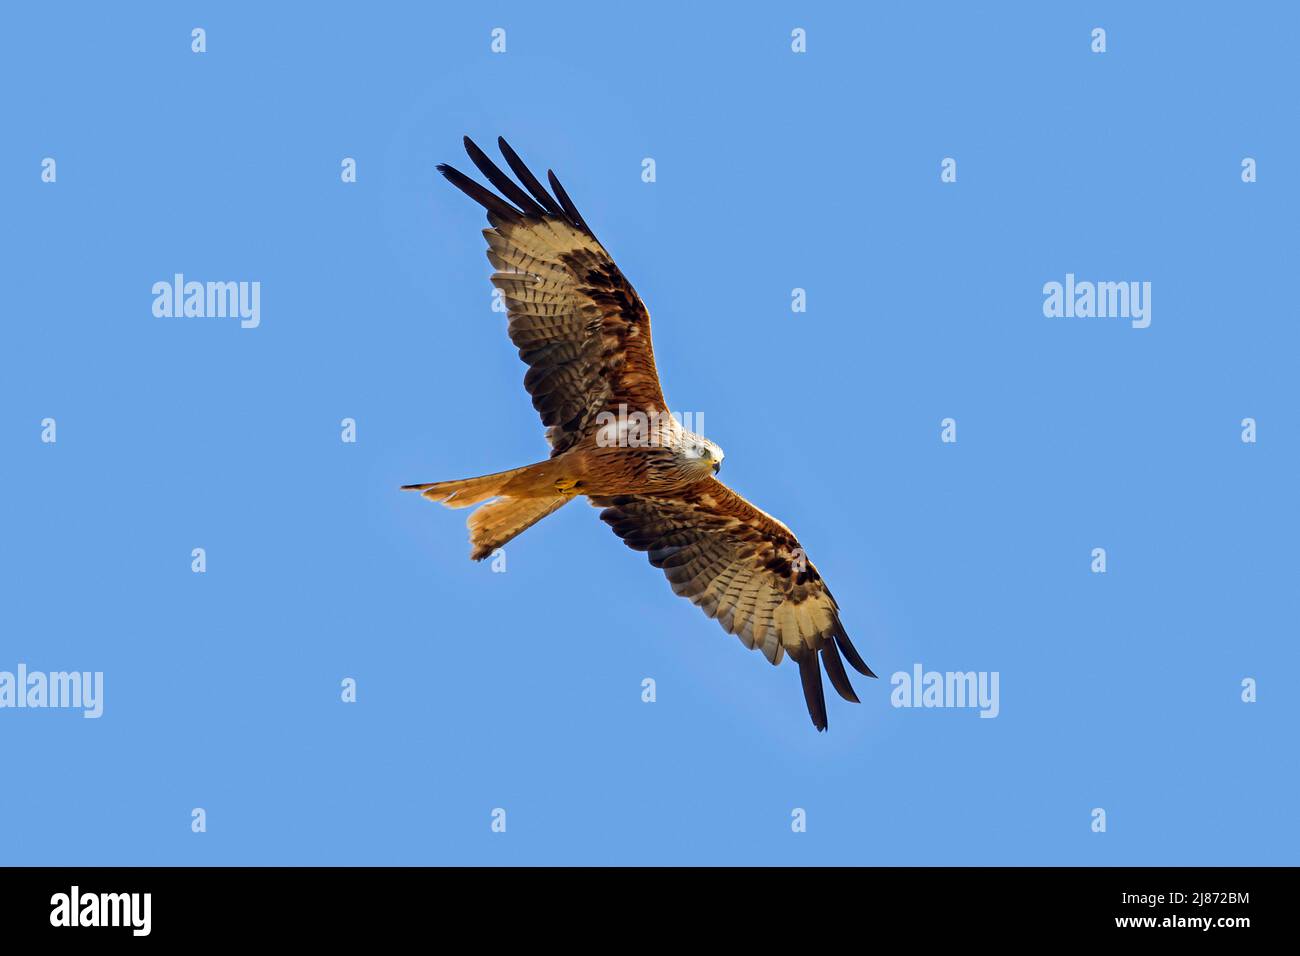 Red kite (Milvus milvus) in flight soaring against blue sky Stock Photo